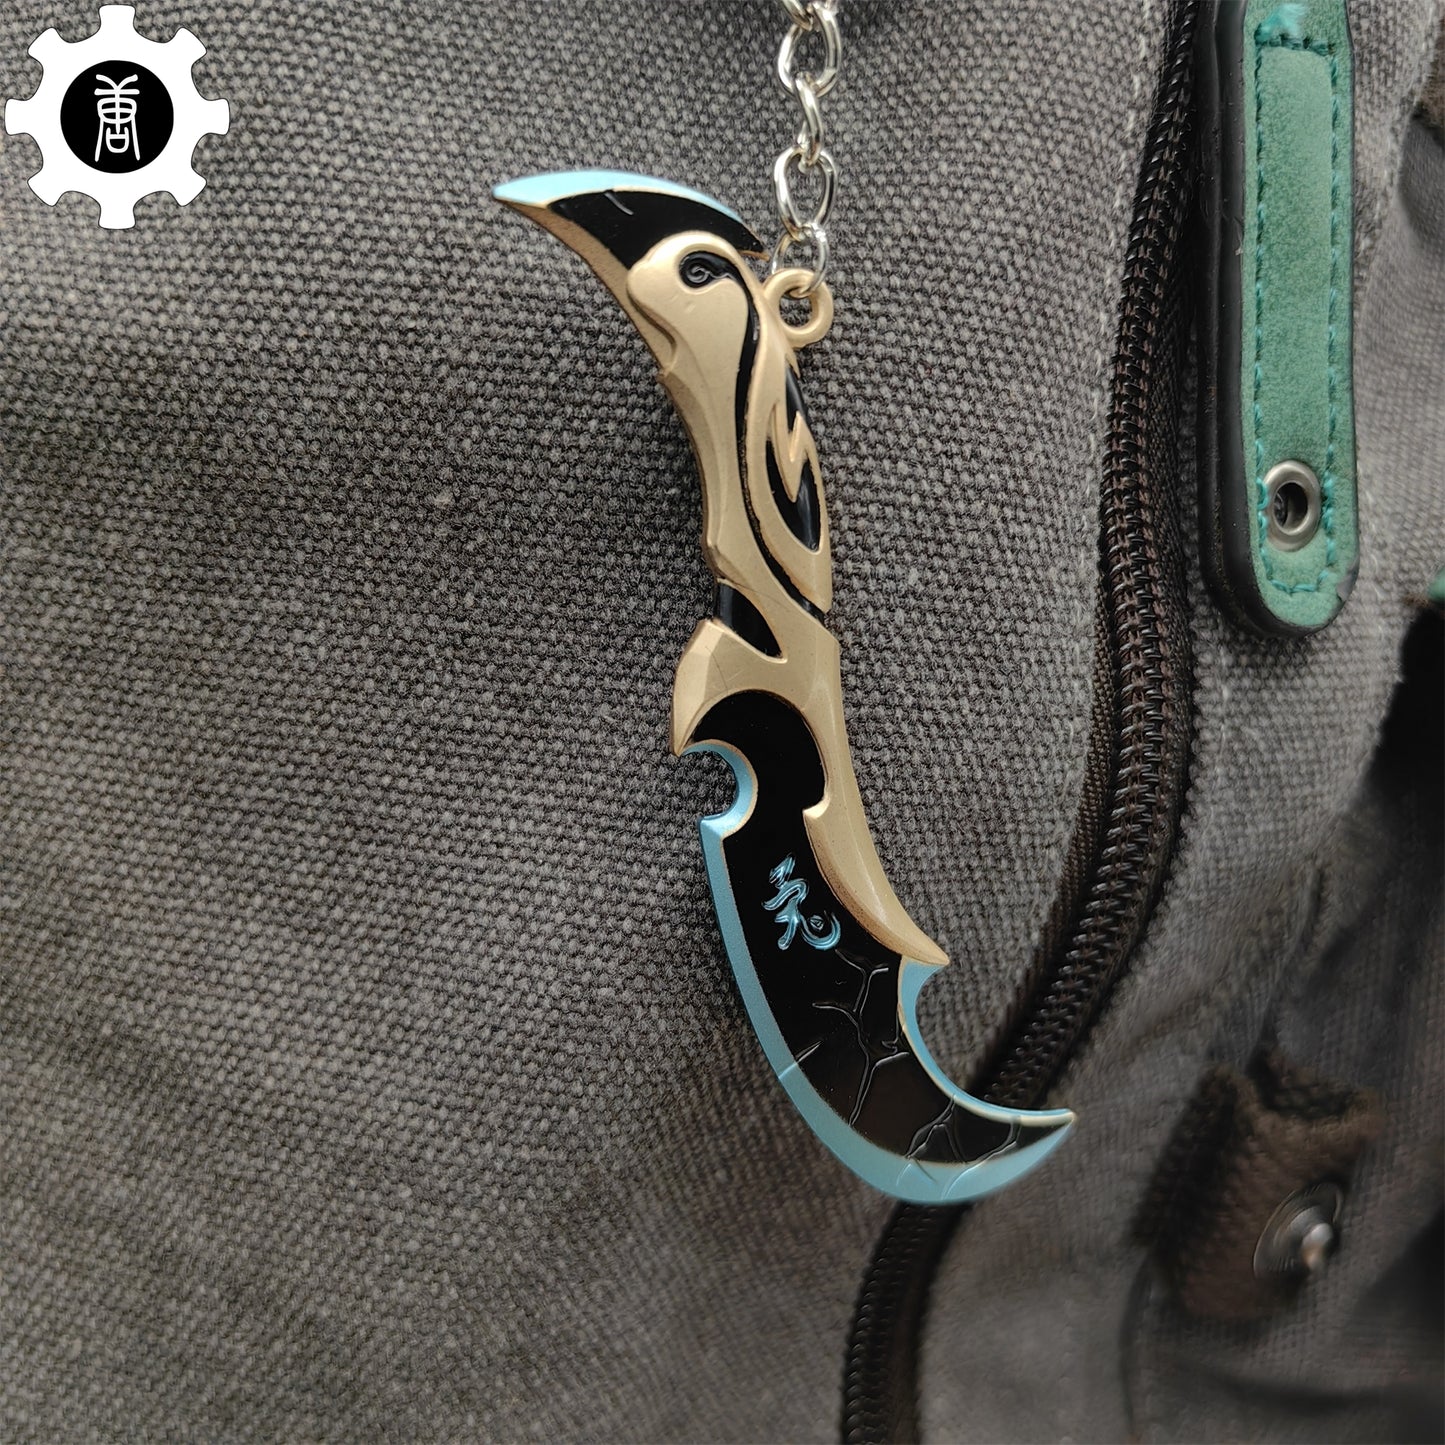 Val Luna's Descent Knife Keychain Metal Backpack Pendant